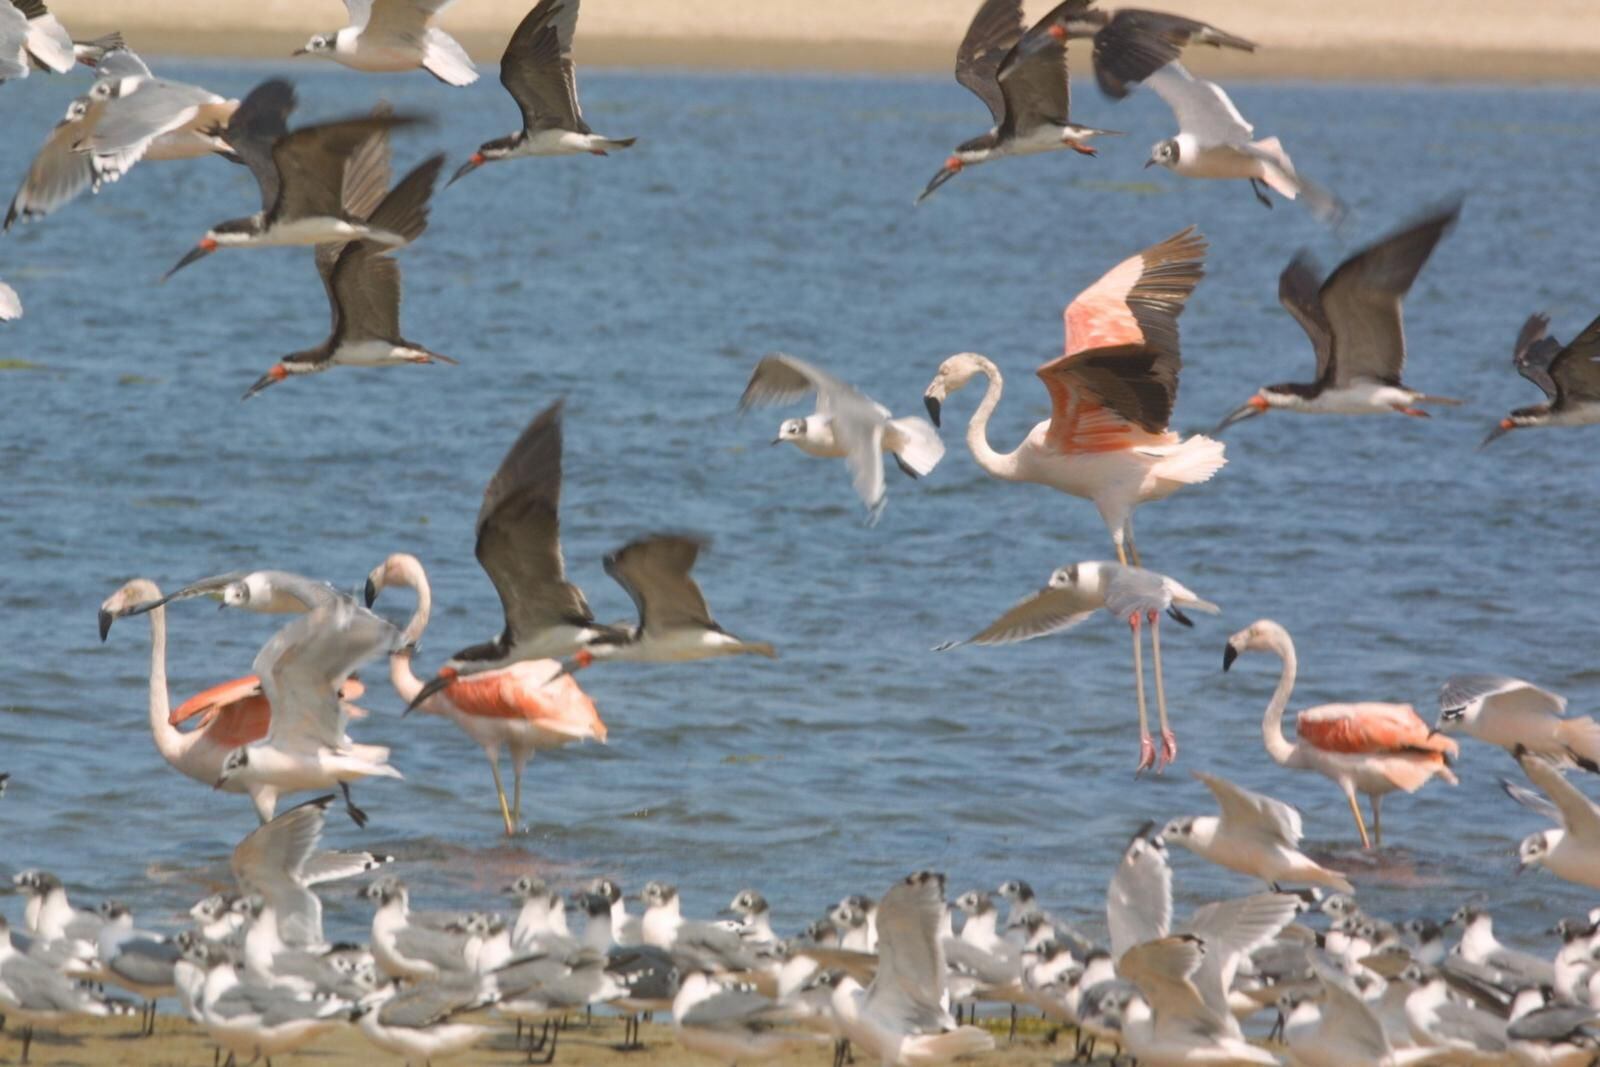 La Reserva Nacional de Paracas celebrará en setiembre 49 años de creación como una de las áreas naturales protegidas más emblemáticas del país por su amplia diversidad en el ámbito marino y costero.